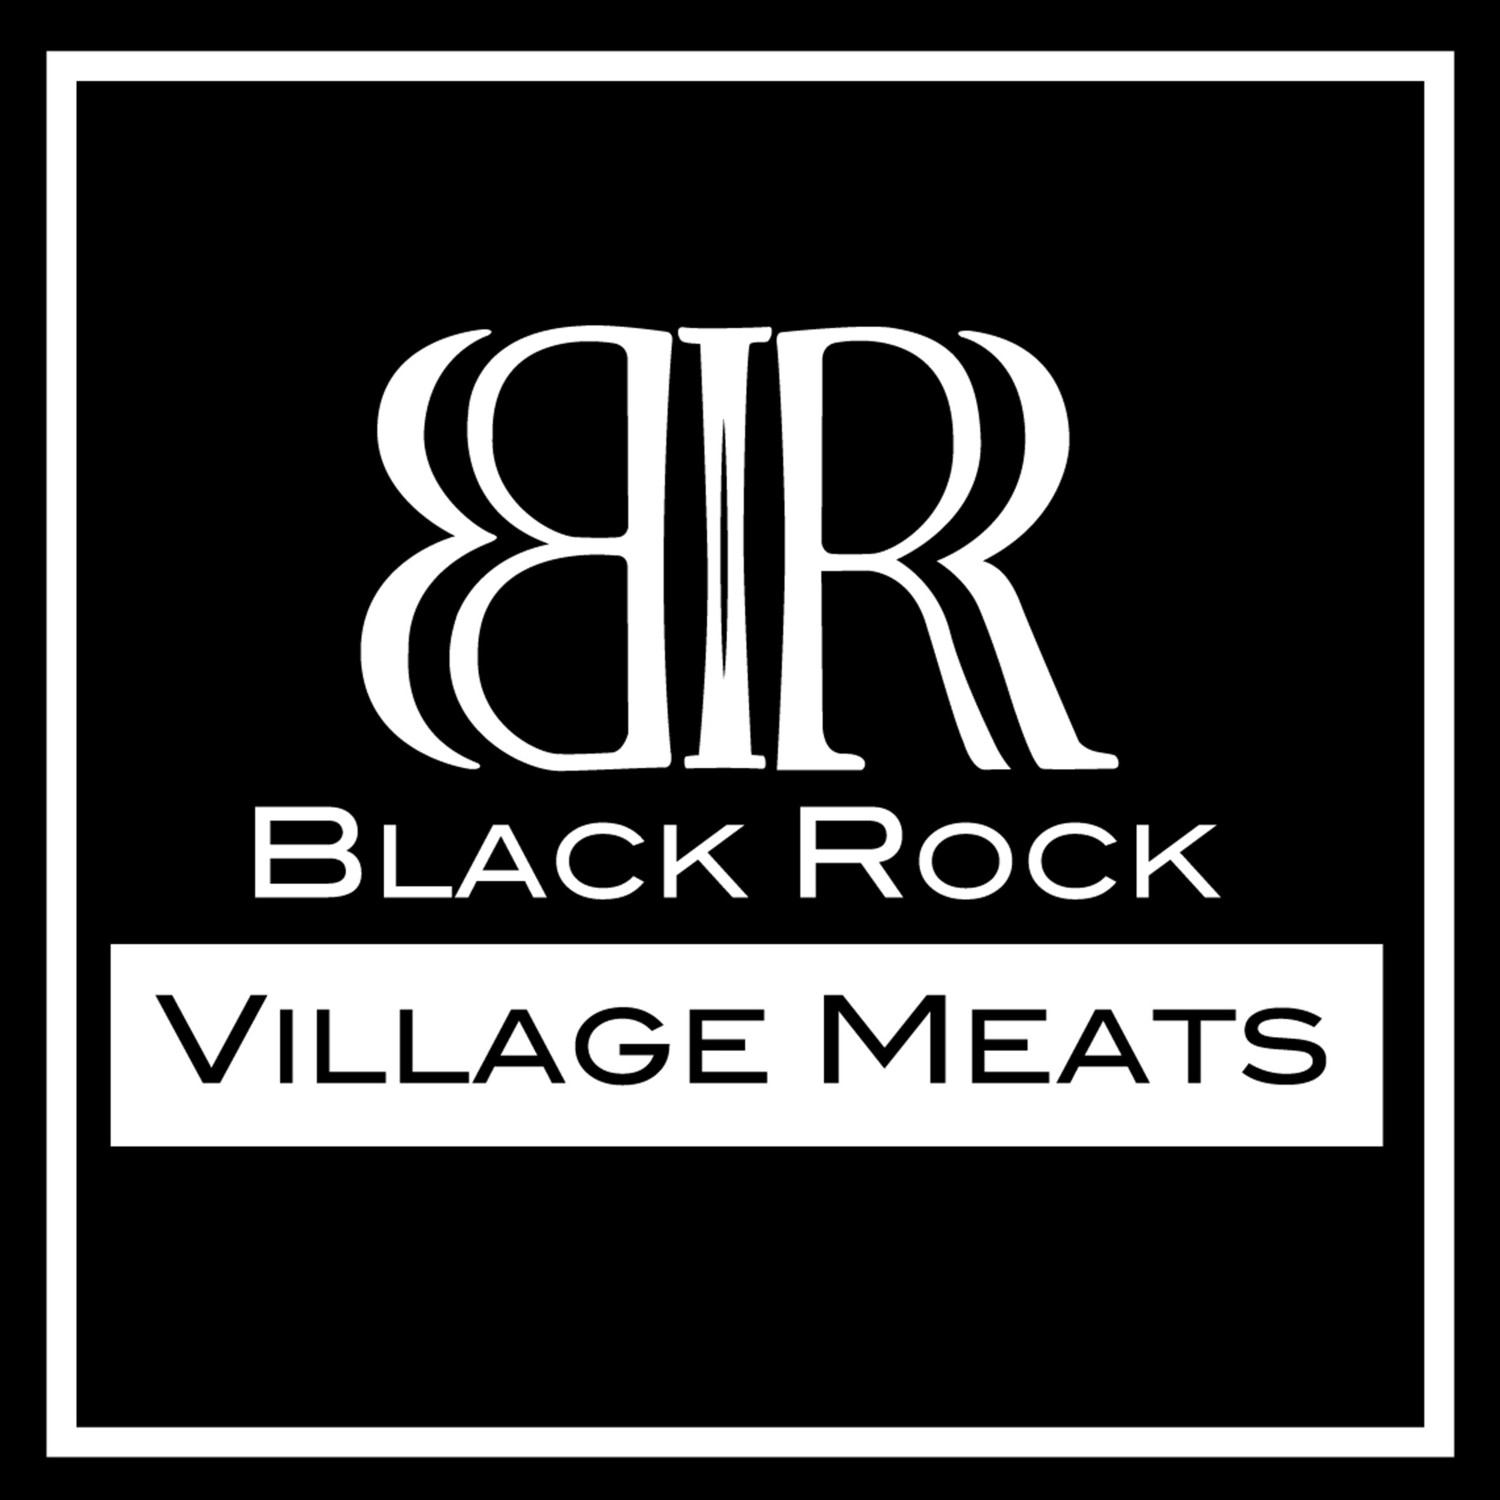 Black Rock Village Meats